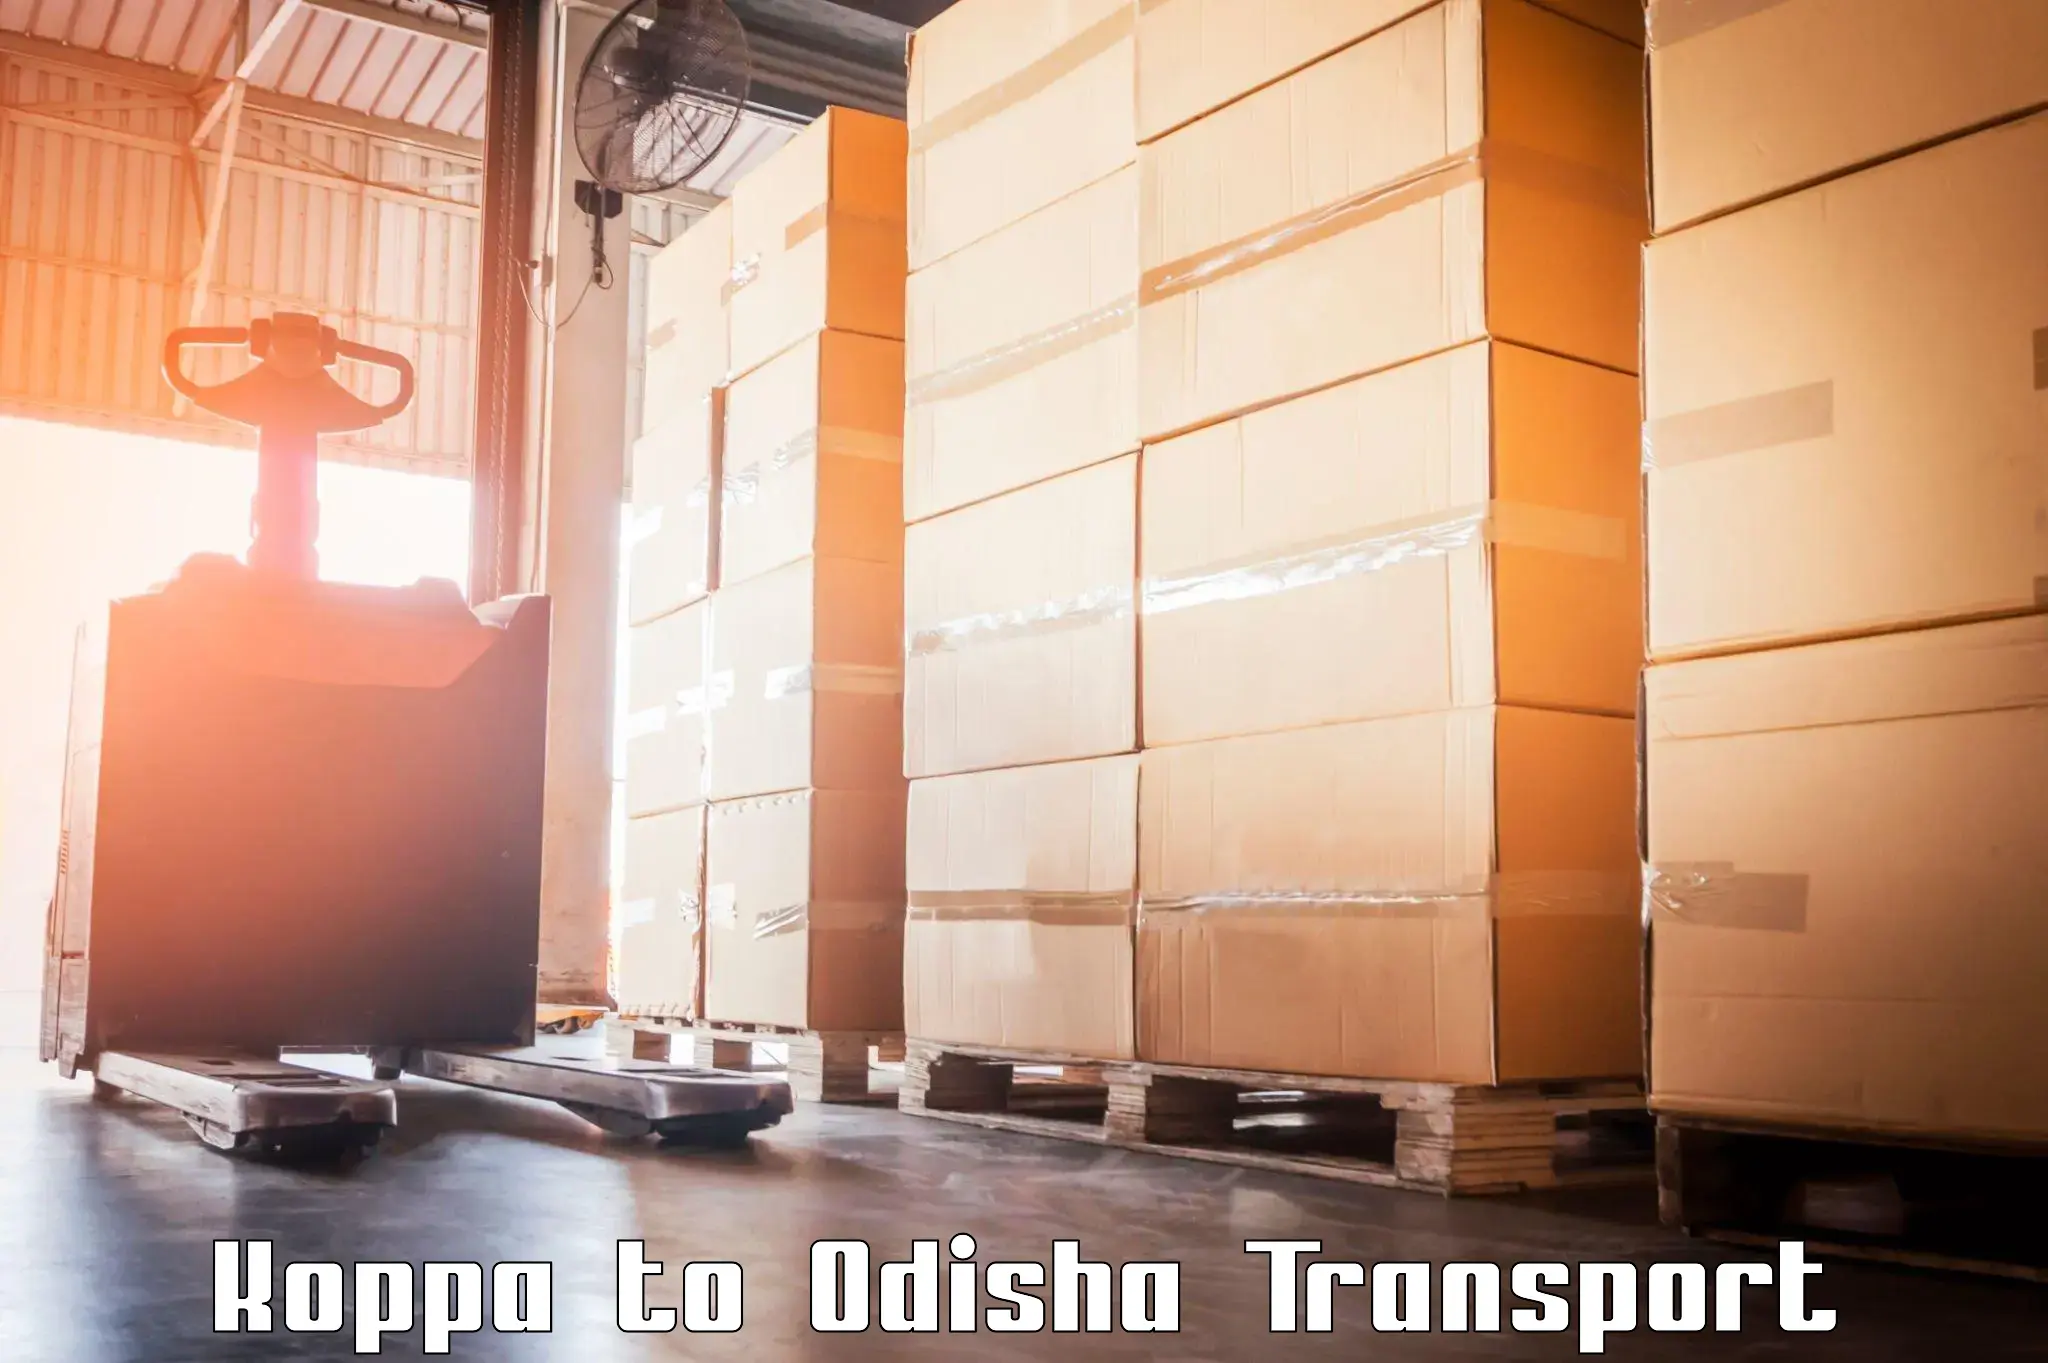 Transport in sharing Koppa to Polasara